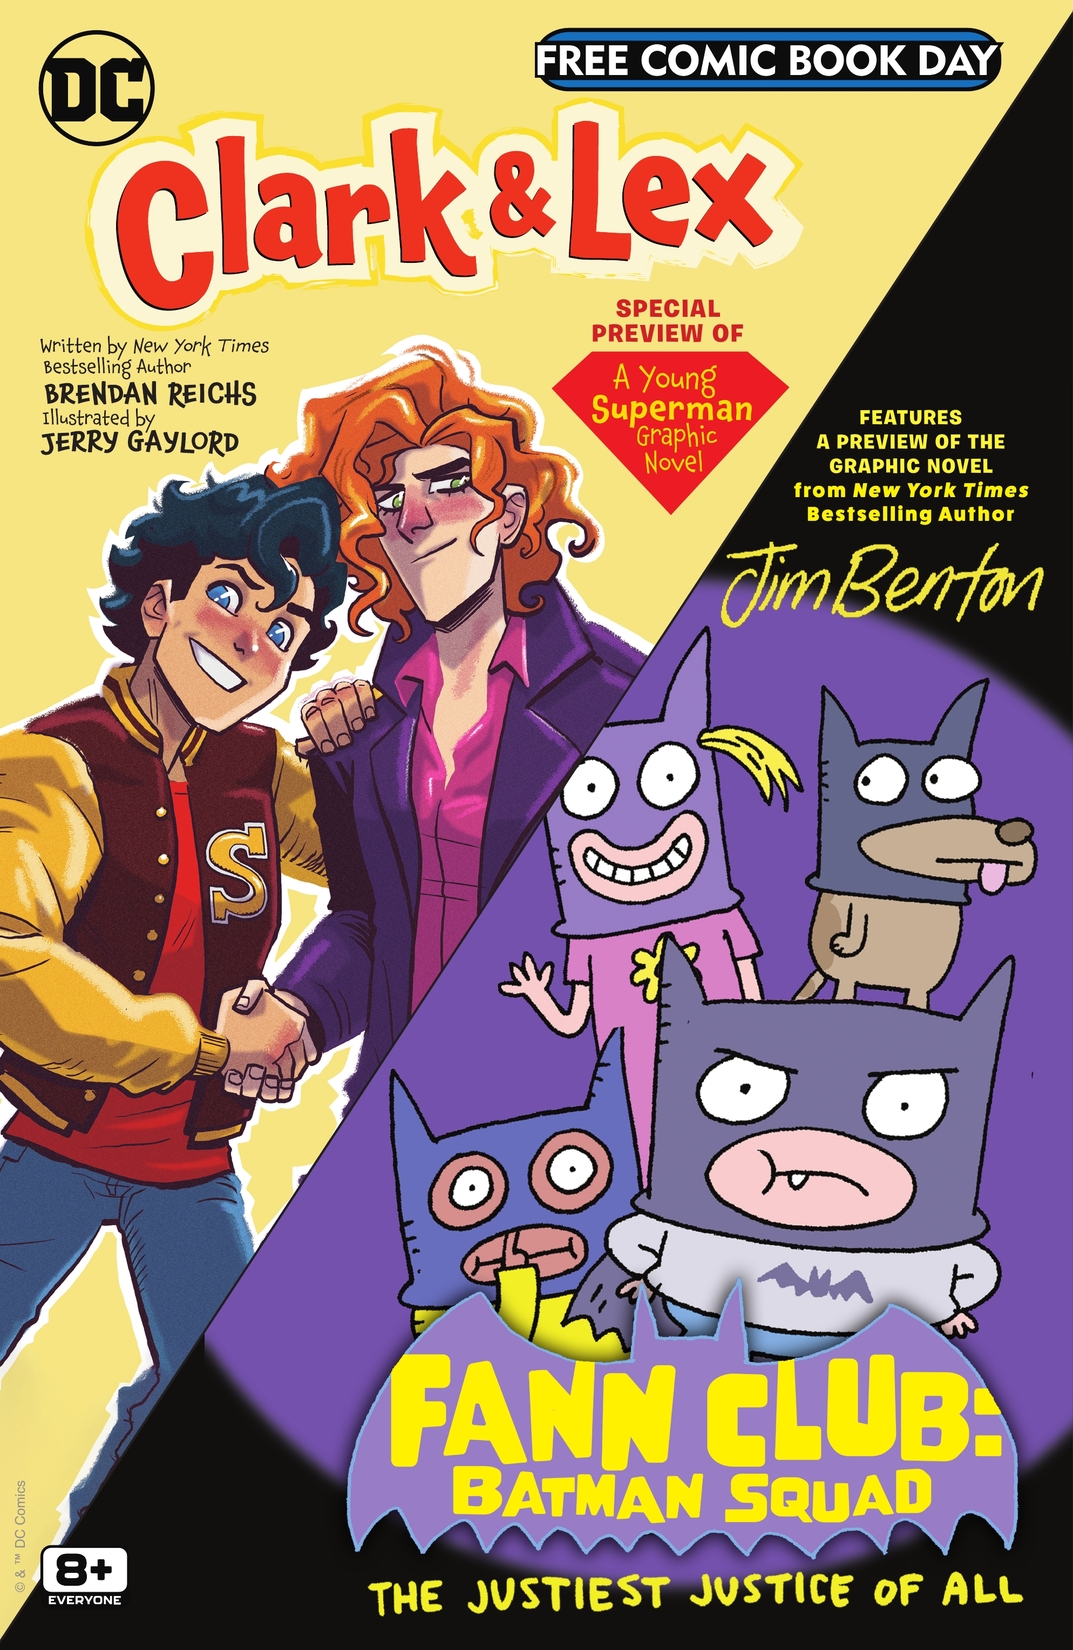 Clark & Lex and Fann Club: Batman Squad 2023 FCBD Special Edition #1 preview images